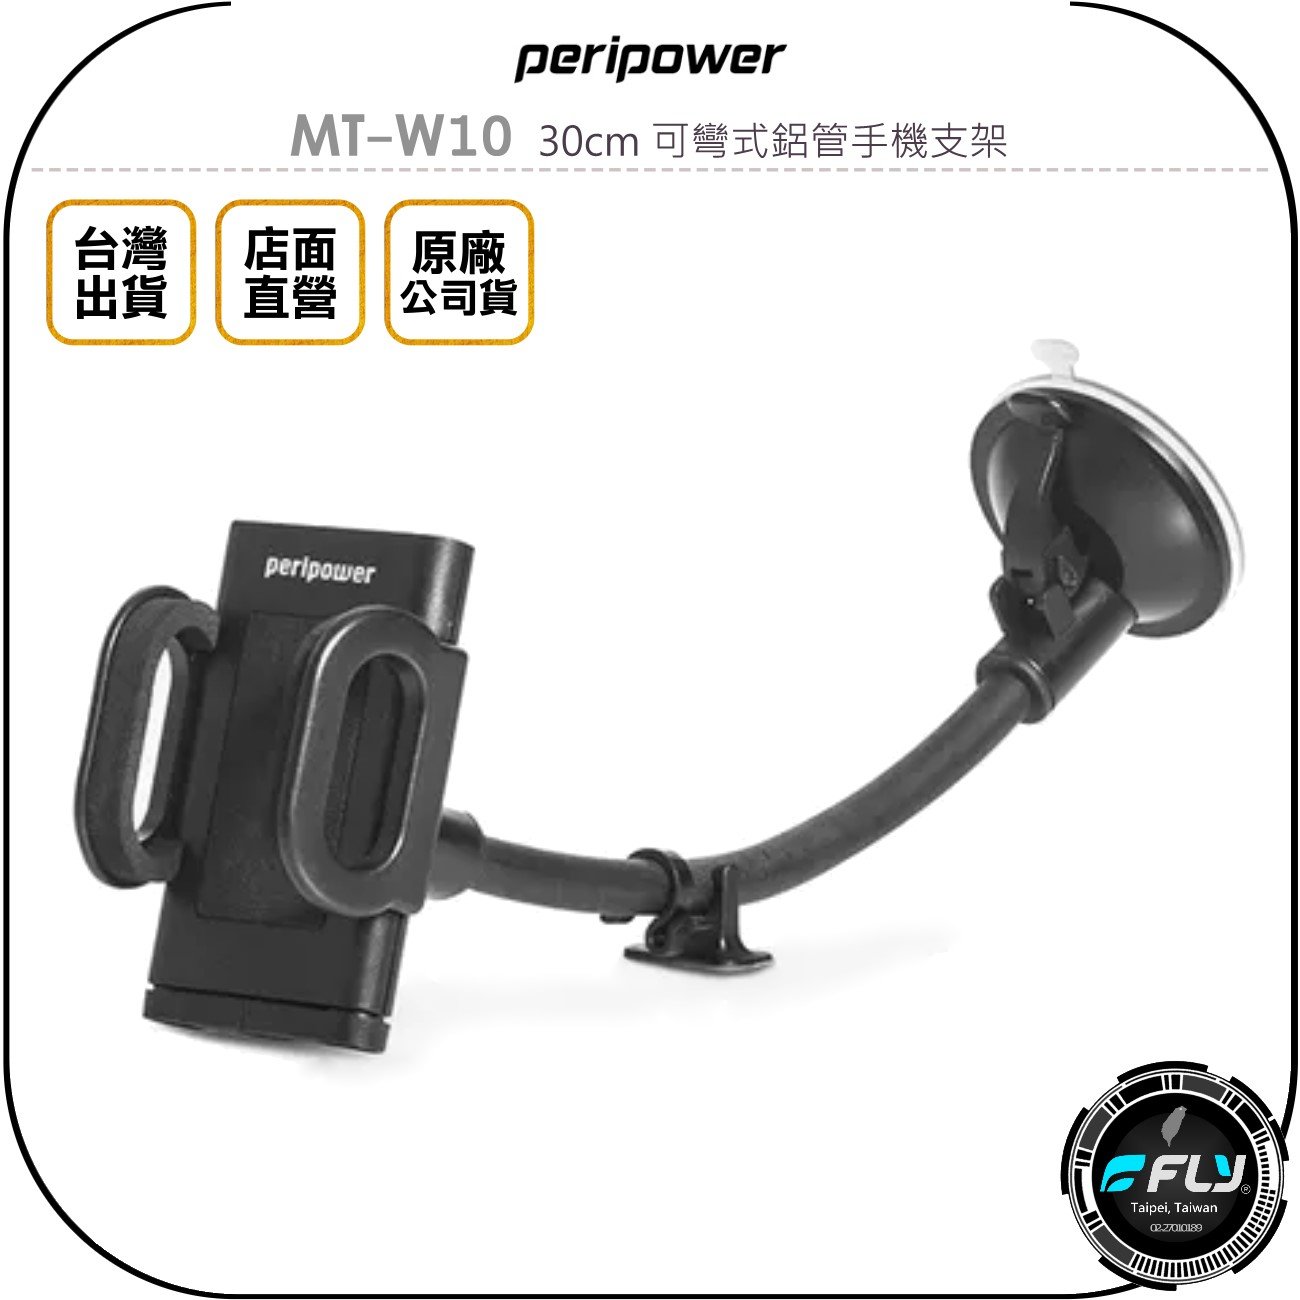 《飛翔無線3C》peripower MT-W10 30cm 可彎式鋁管手機支架◉公司貨◉吸盤手機夾◉車用手機座